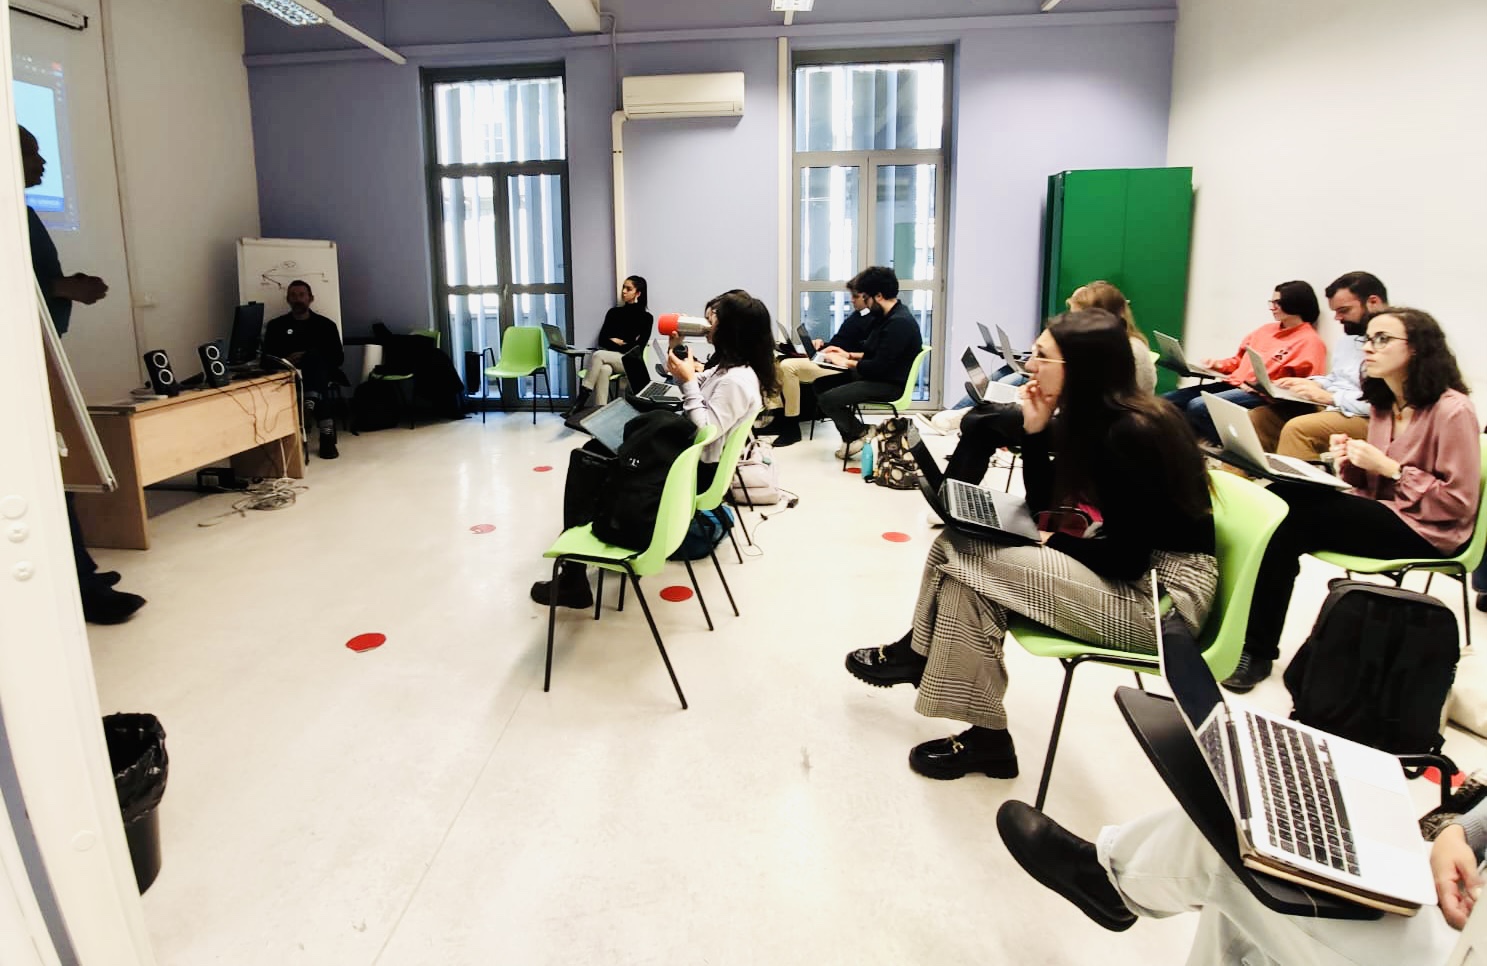 Formazione alla scuola di giornalismo di Torino: “Lavorare in sinergia significa inclusione”